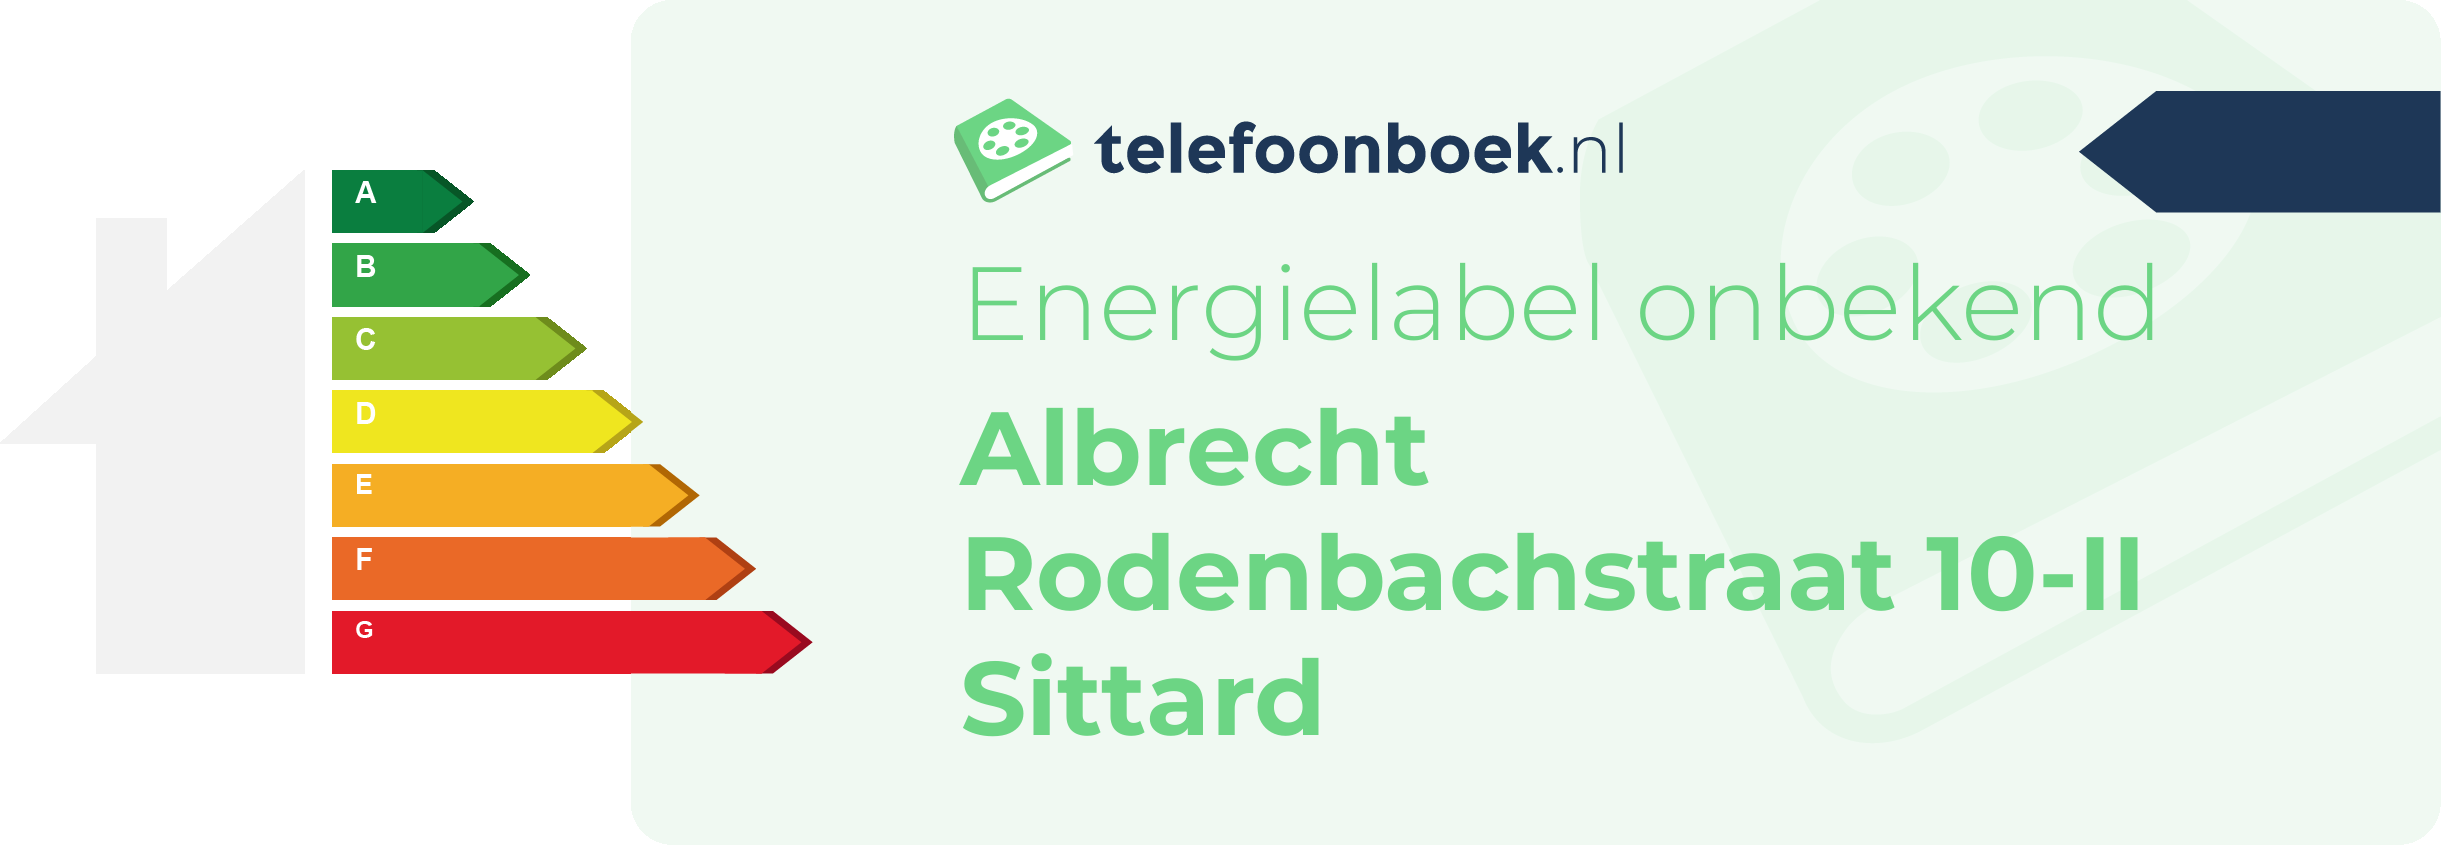 Energielabel Albrecht Rodenbachstraat 10-II Sittard